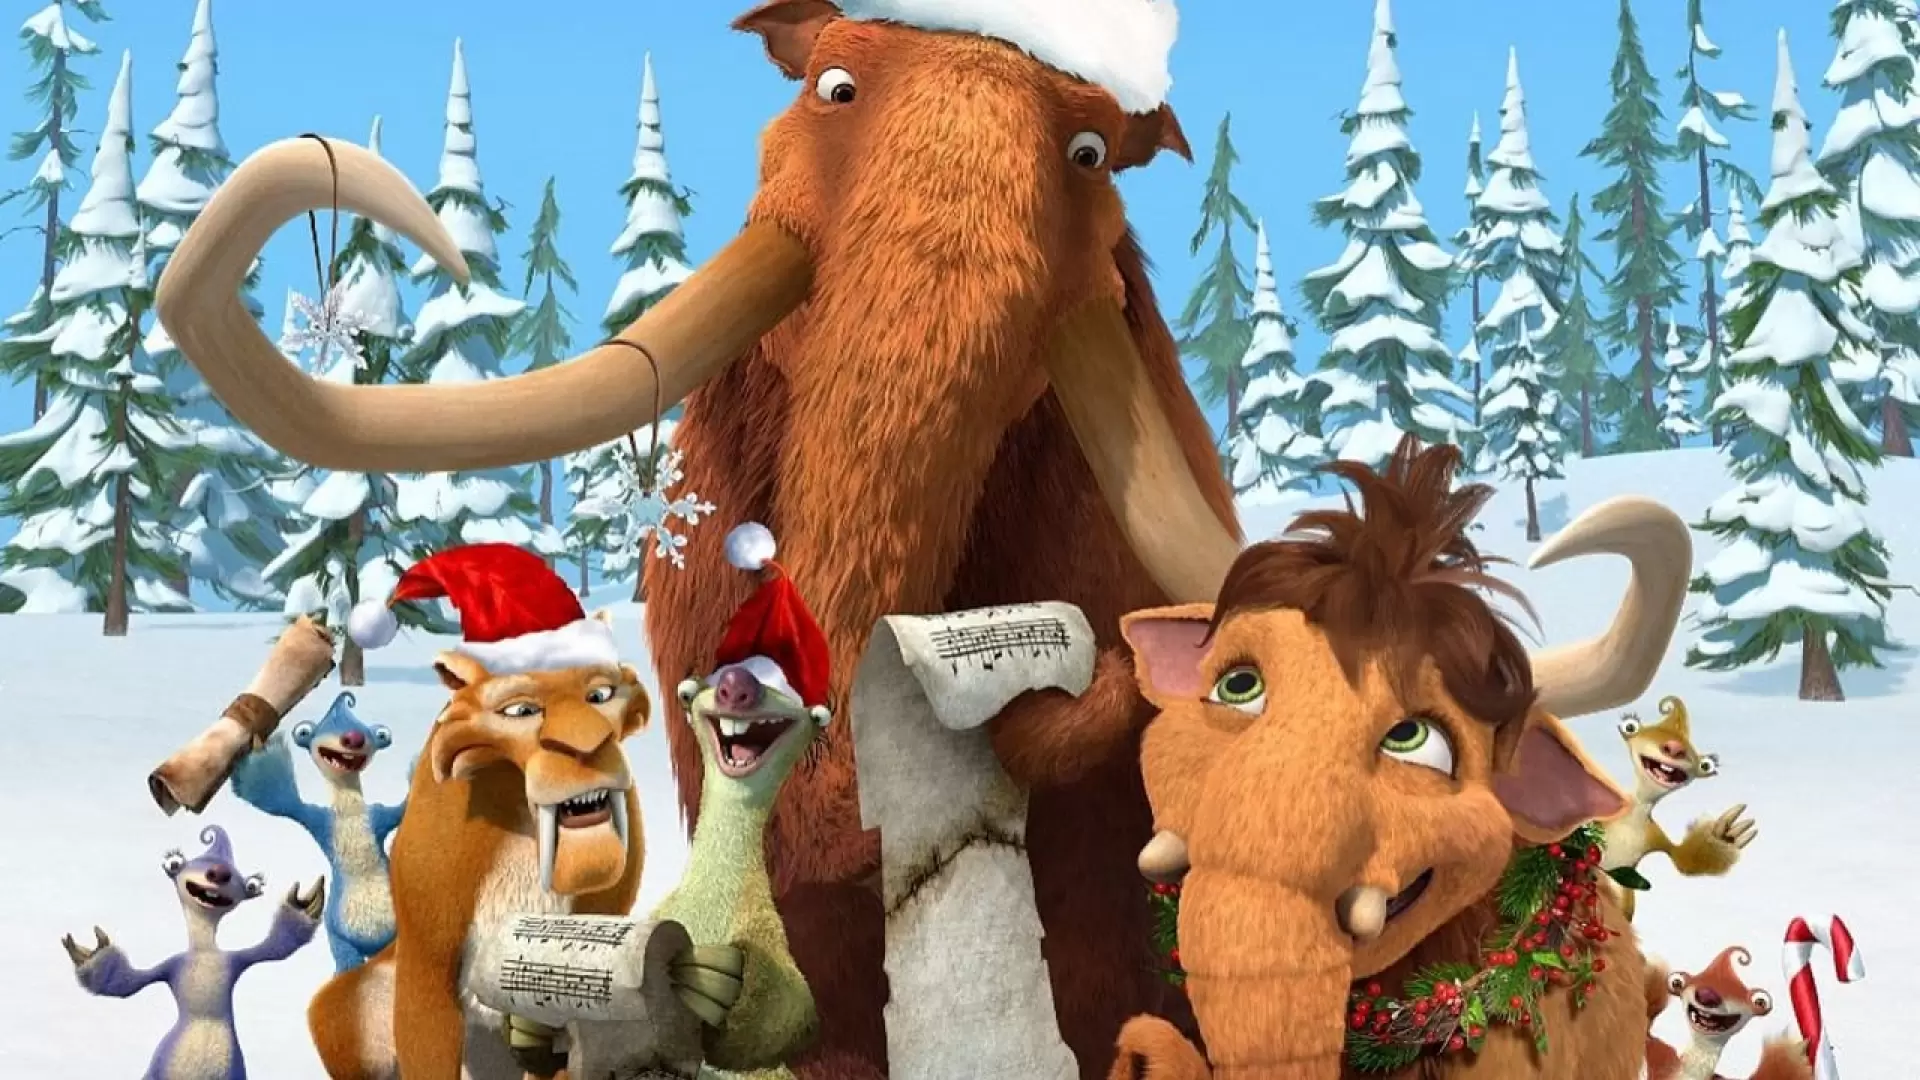 دانلود انیمیشن Ice Age: A Mammoth Christmas 2011 (عصر یخبندان: کریسمس ماموت) با زیرنویس فارسی